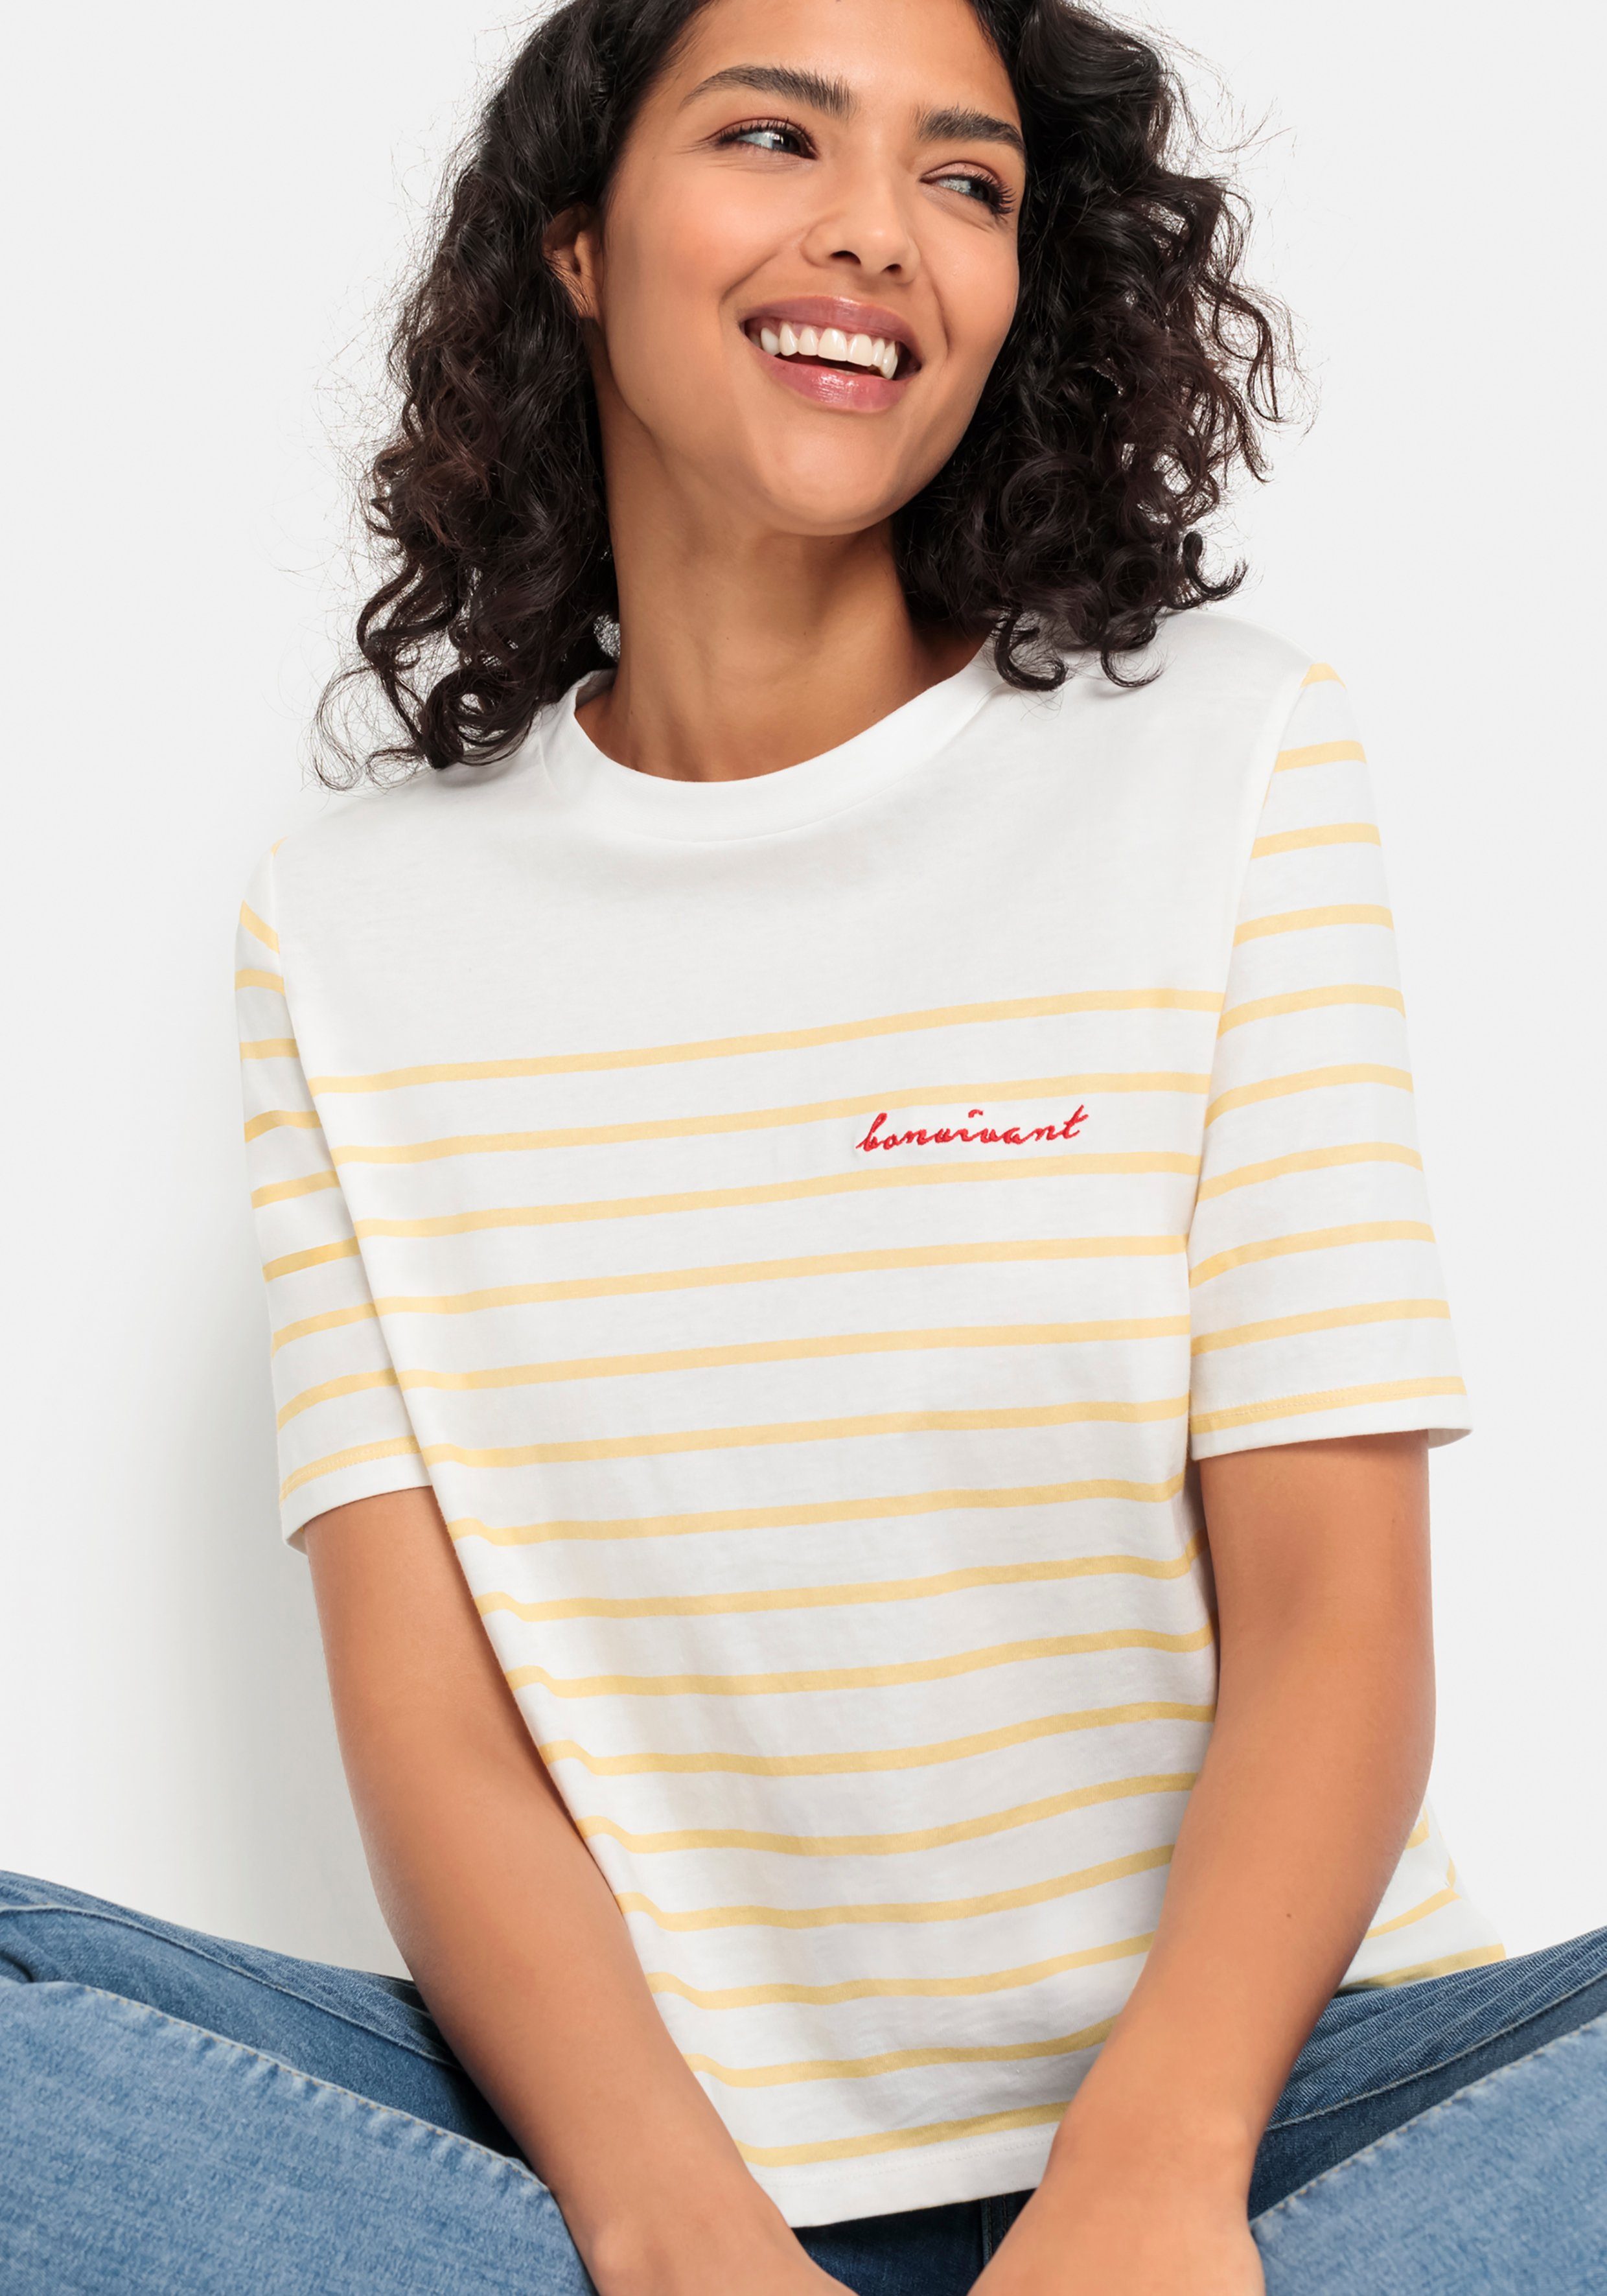 Günstige Lascana Shirts für Damen kaufen » Lascana Shirts SALE